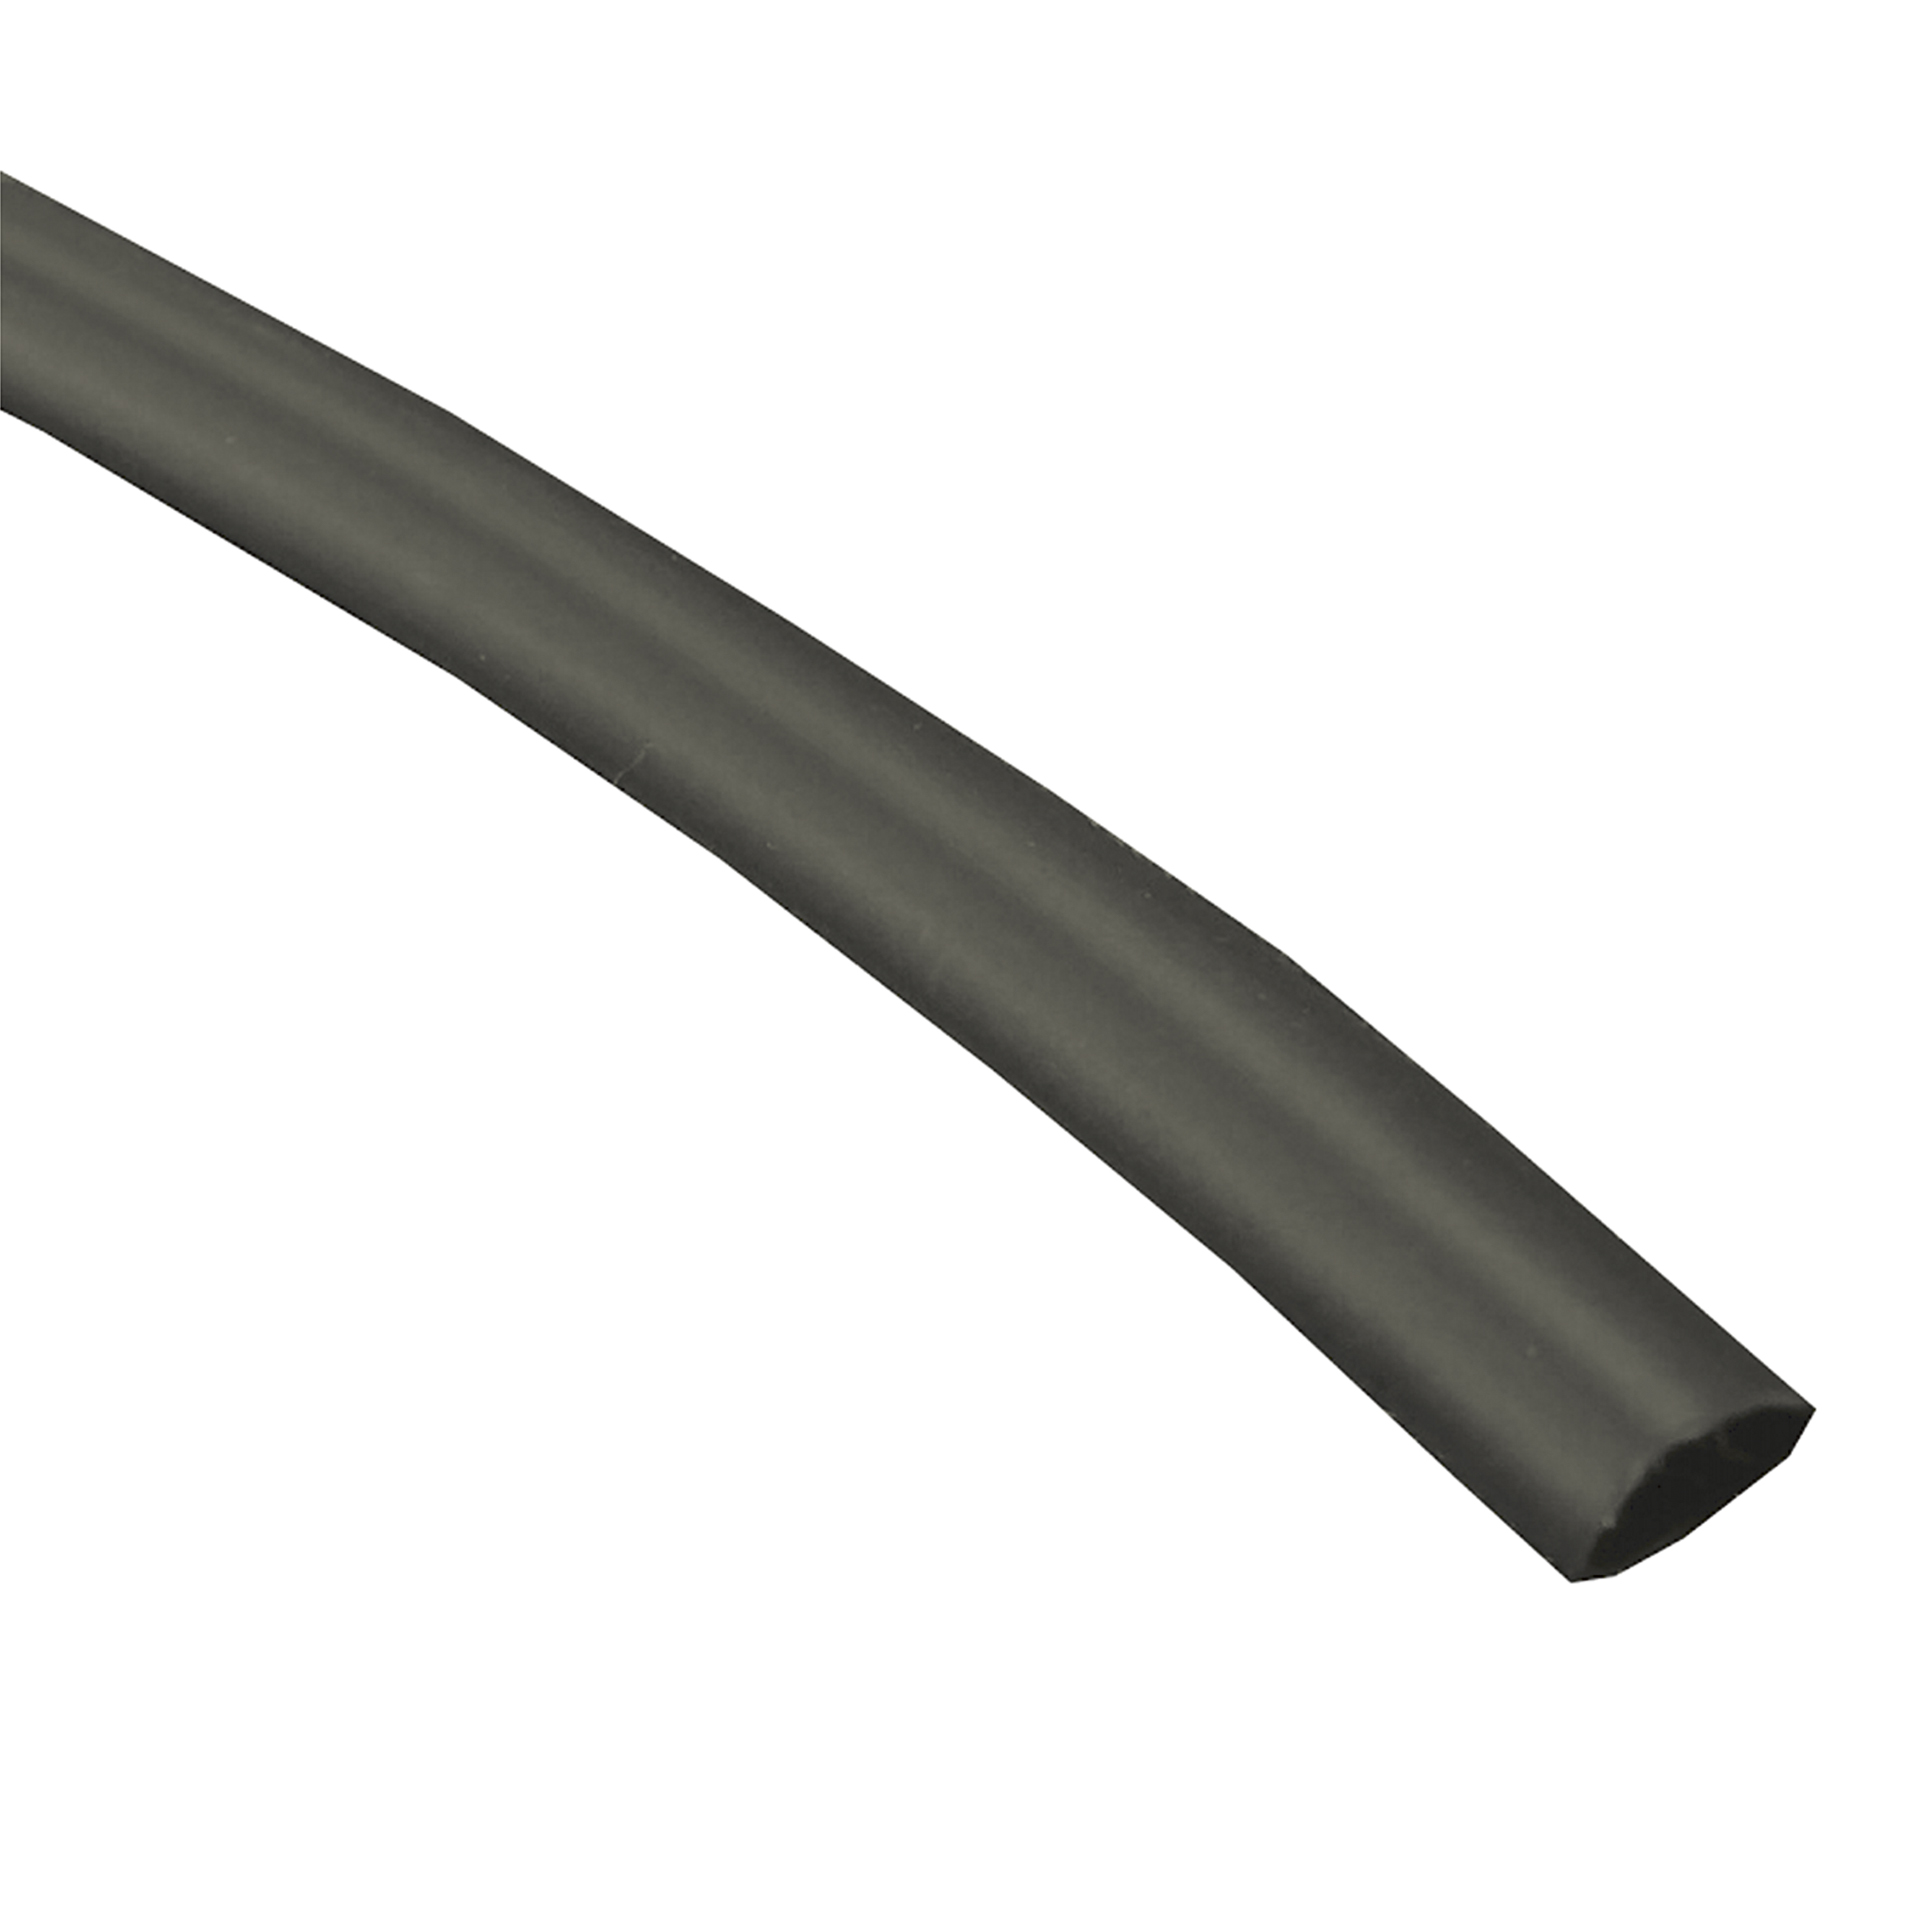 Hellerman Krimpkous lengte 1,22mtr zwart 1/4inch - 6,4-3,2mm 10st. 5942410